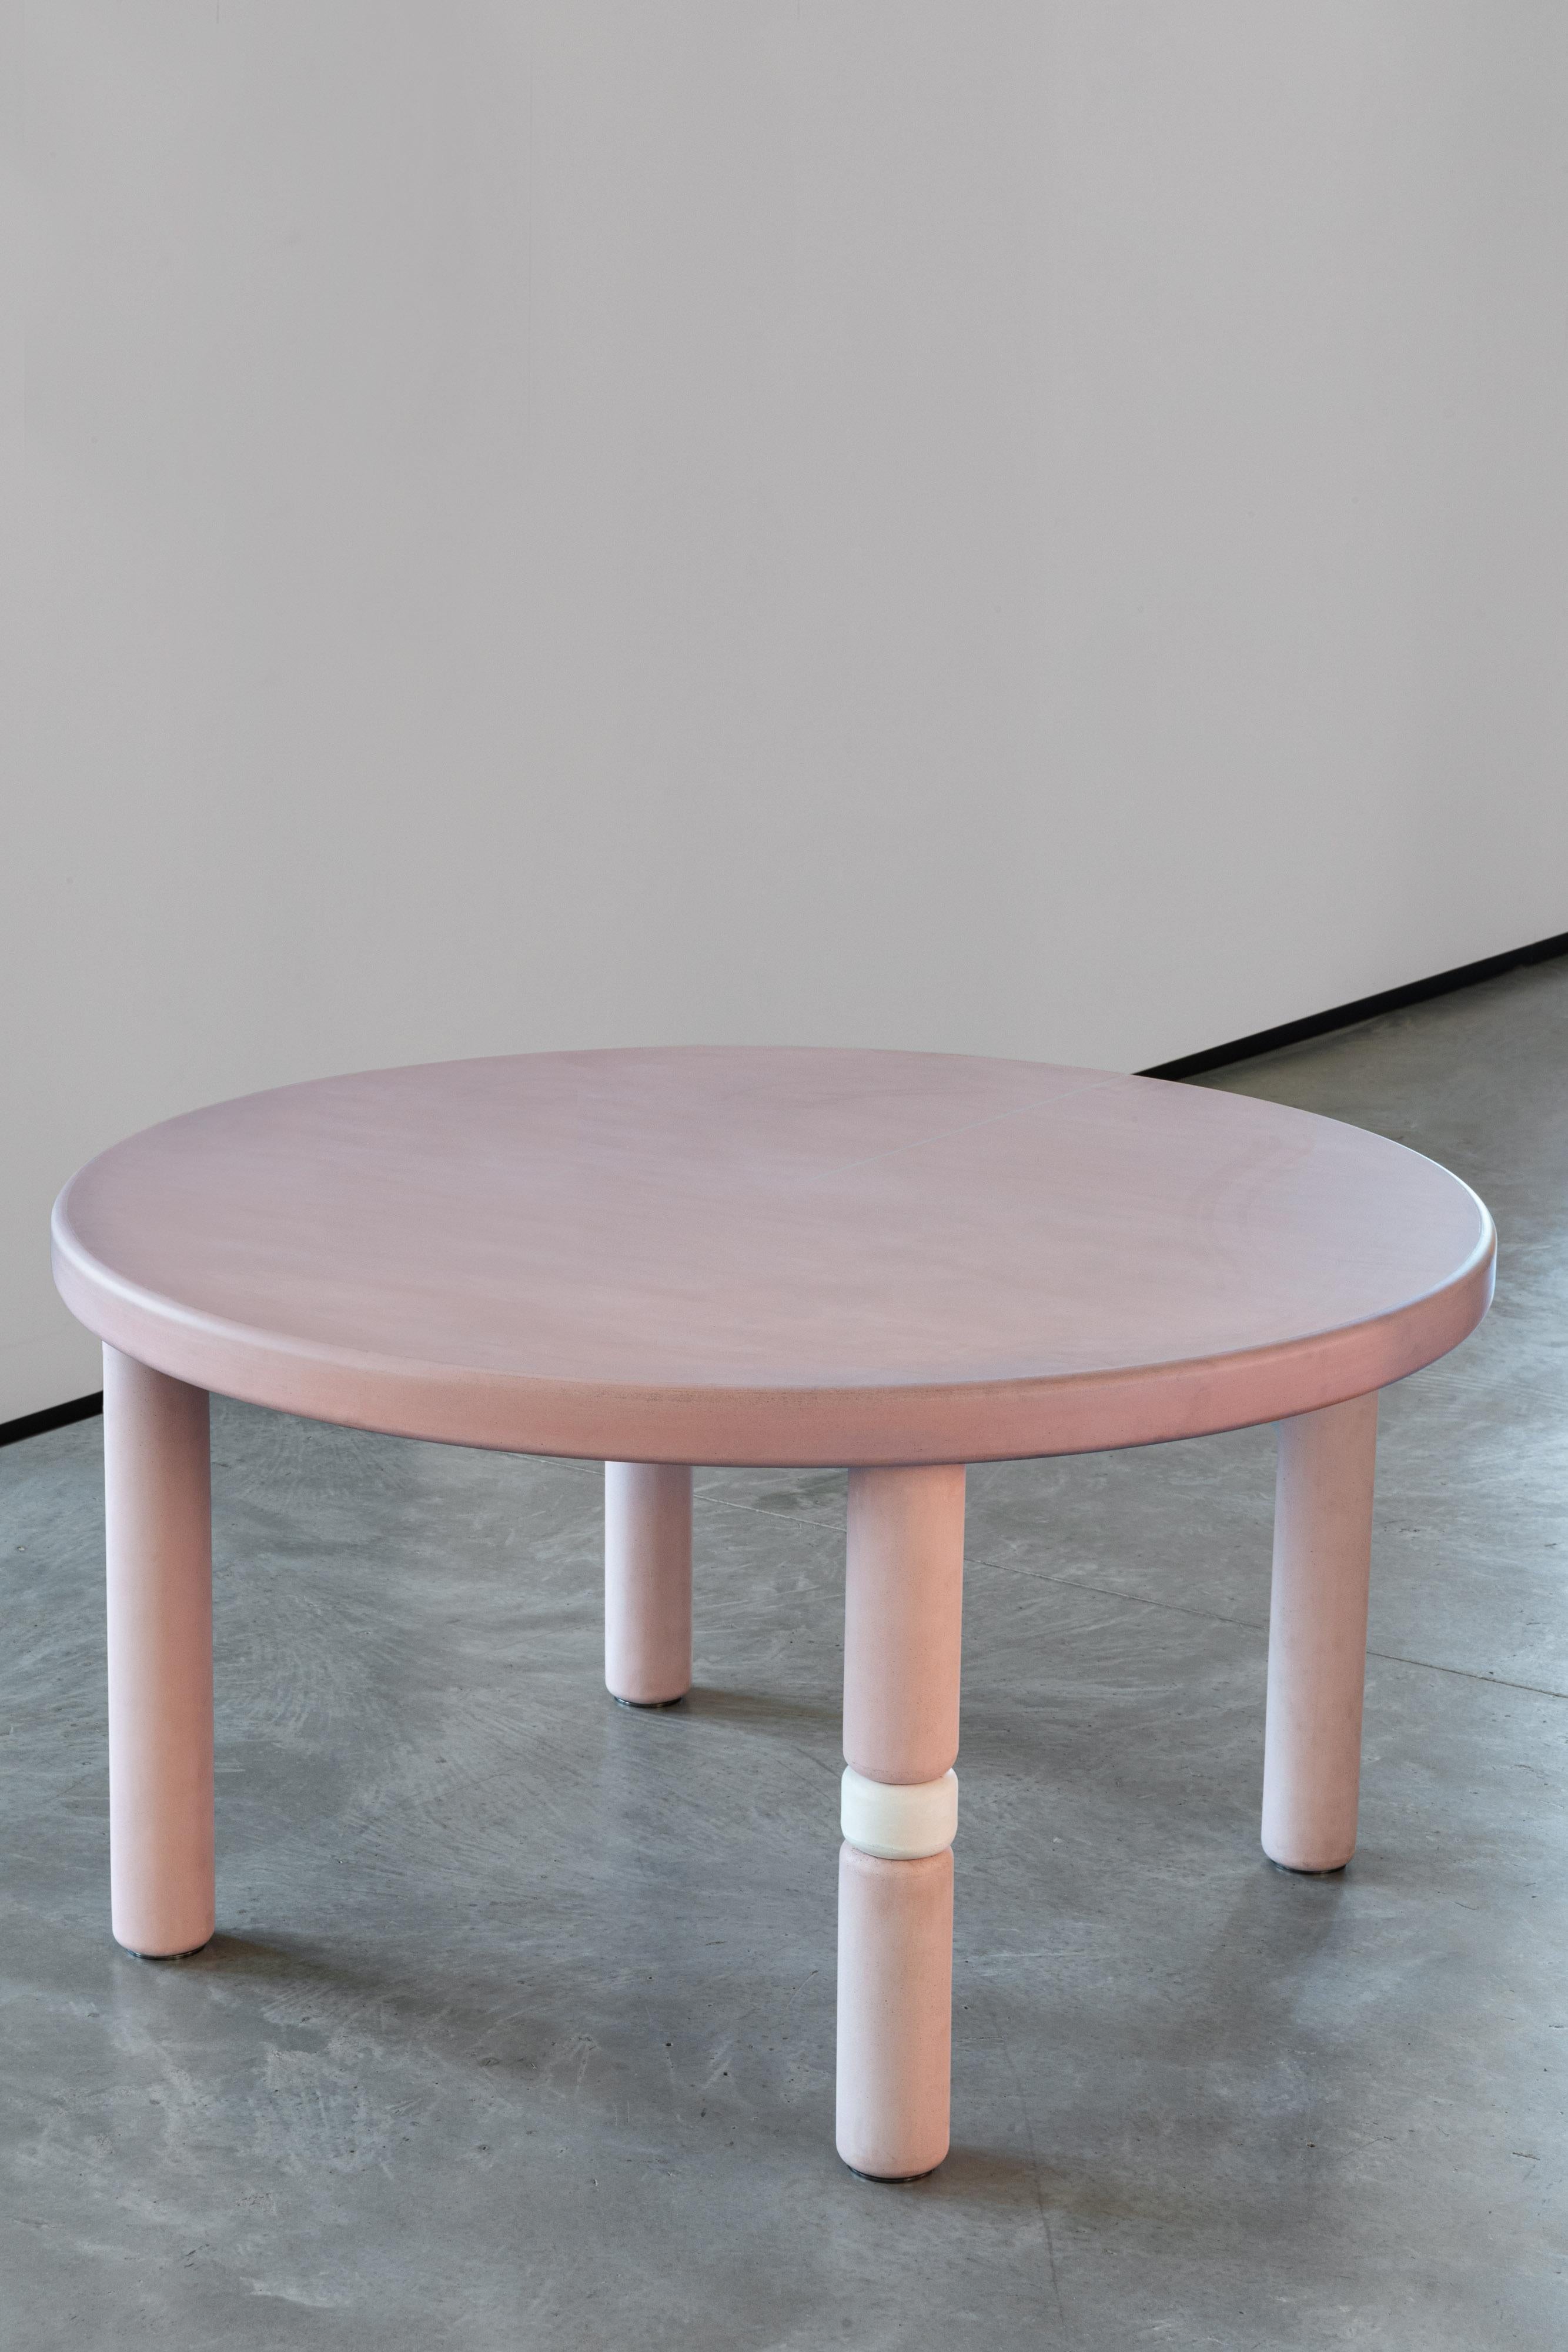 La table circulaire Flipper fait partie de la collection Flipper conçue par Marialaura Irvine. Jeu, couleur et liberté sont les mots clés de cette nouvelle collection basée sur le principe 